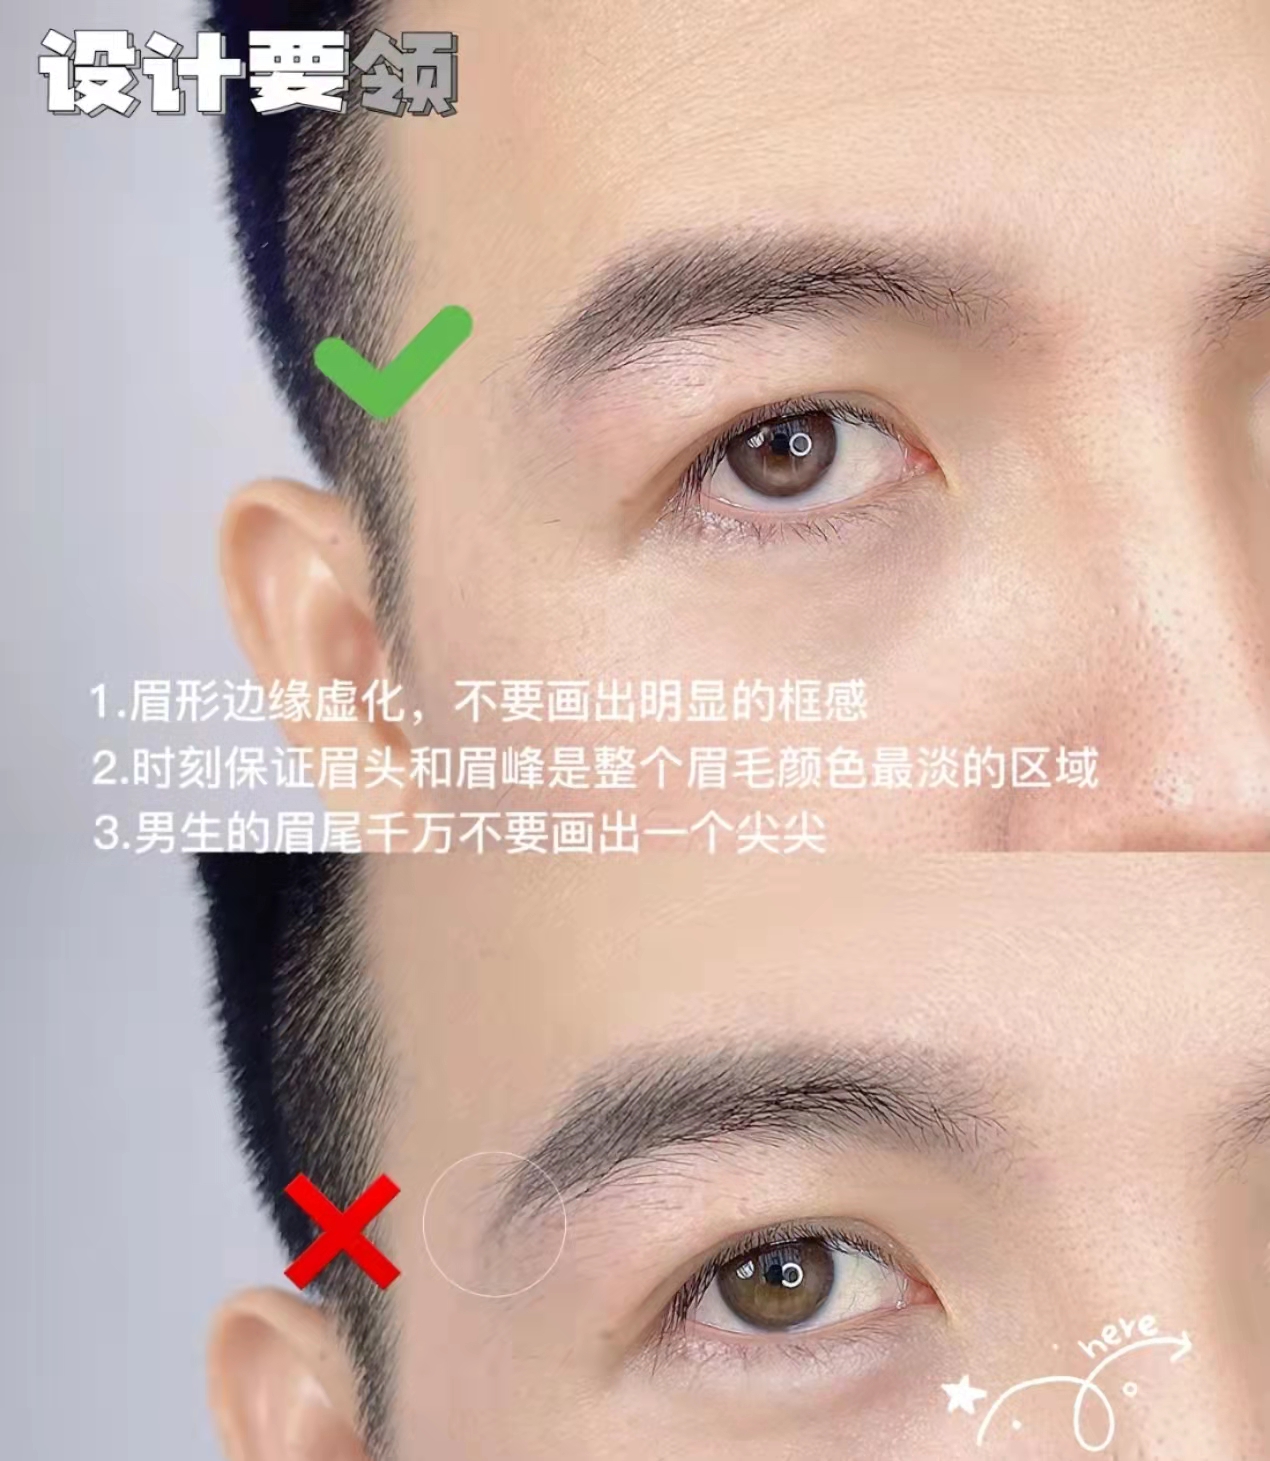 昆明纹绣培训,男士眉型设计,如何快速画出好看的男士眉形